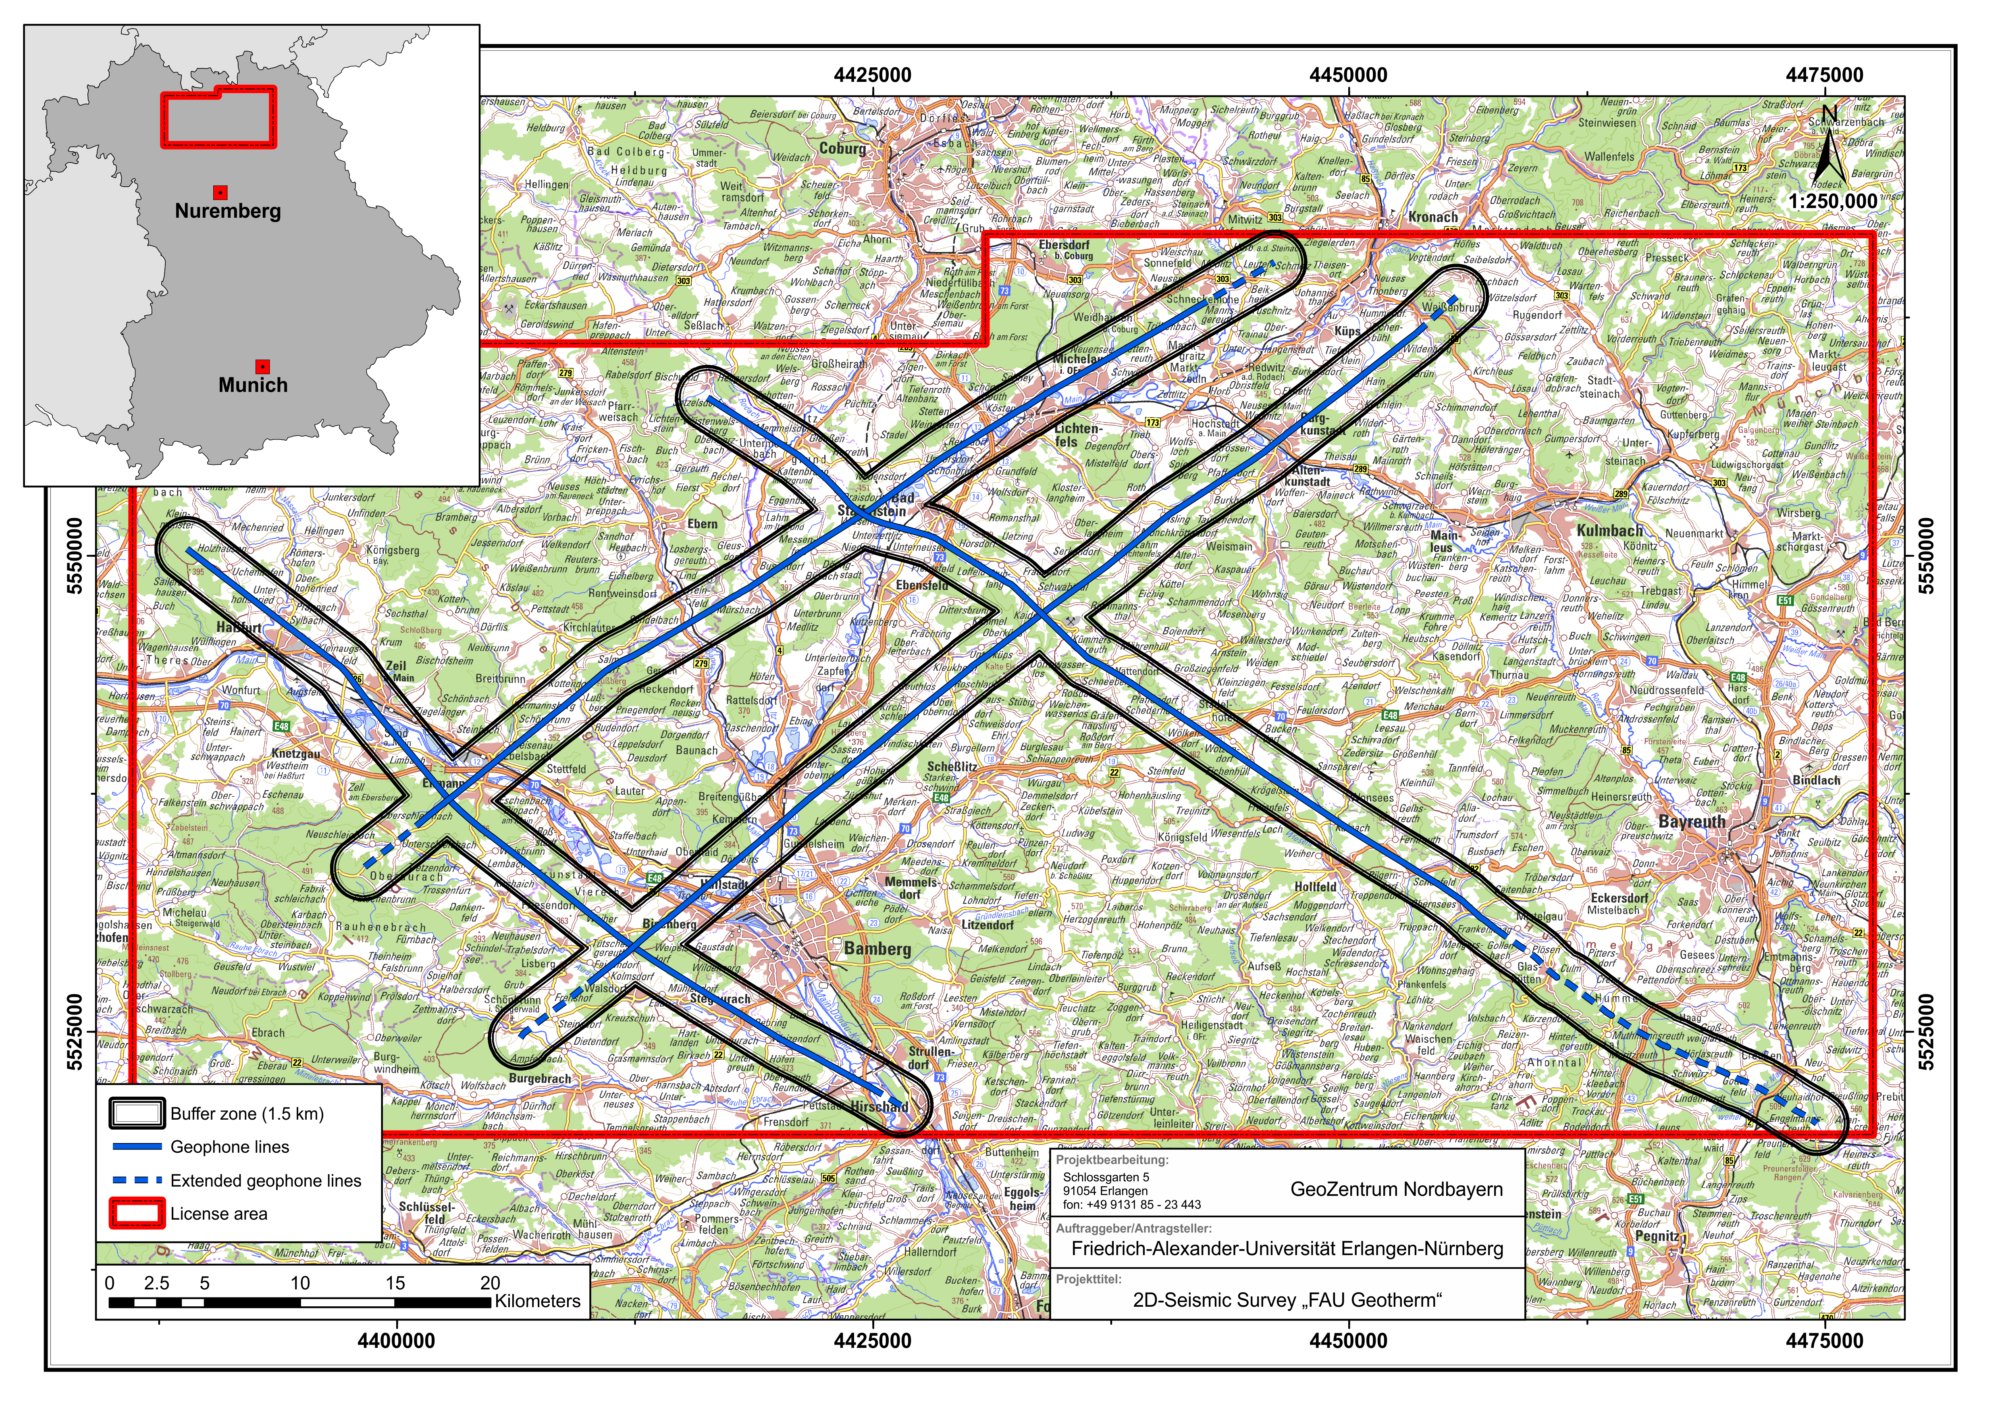 Geplanter Verlauf der 2D- Seismik in Franken (Basisdaten: Bayerische Vermessungsverwaltung – www.geodaten.bayern.de) (Erstellt: Andreas Eberts)